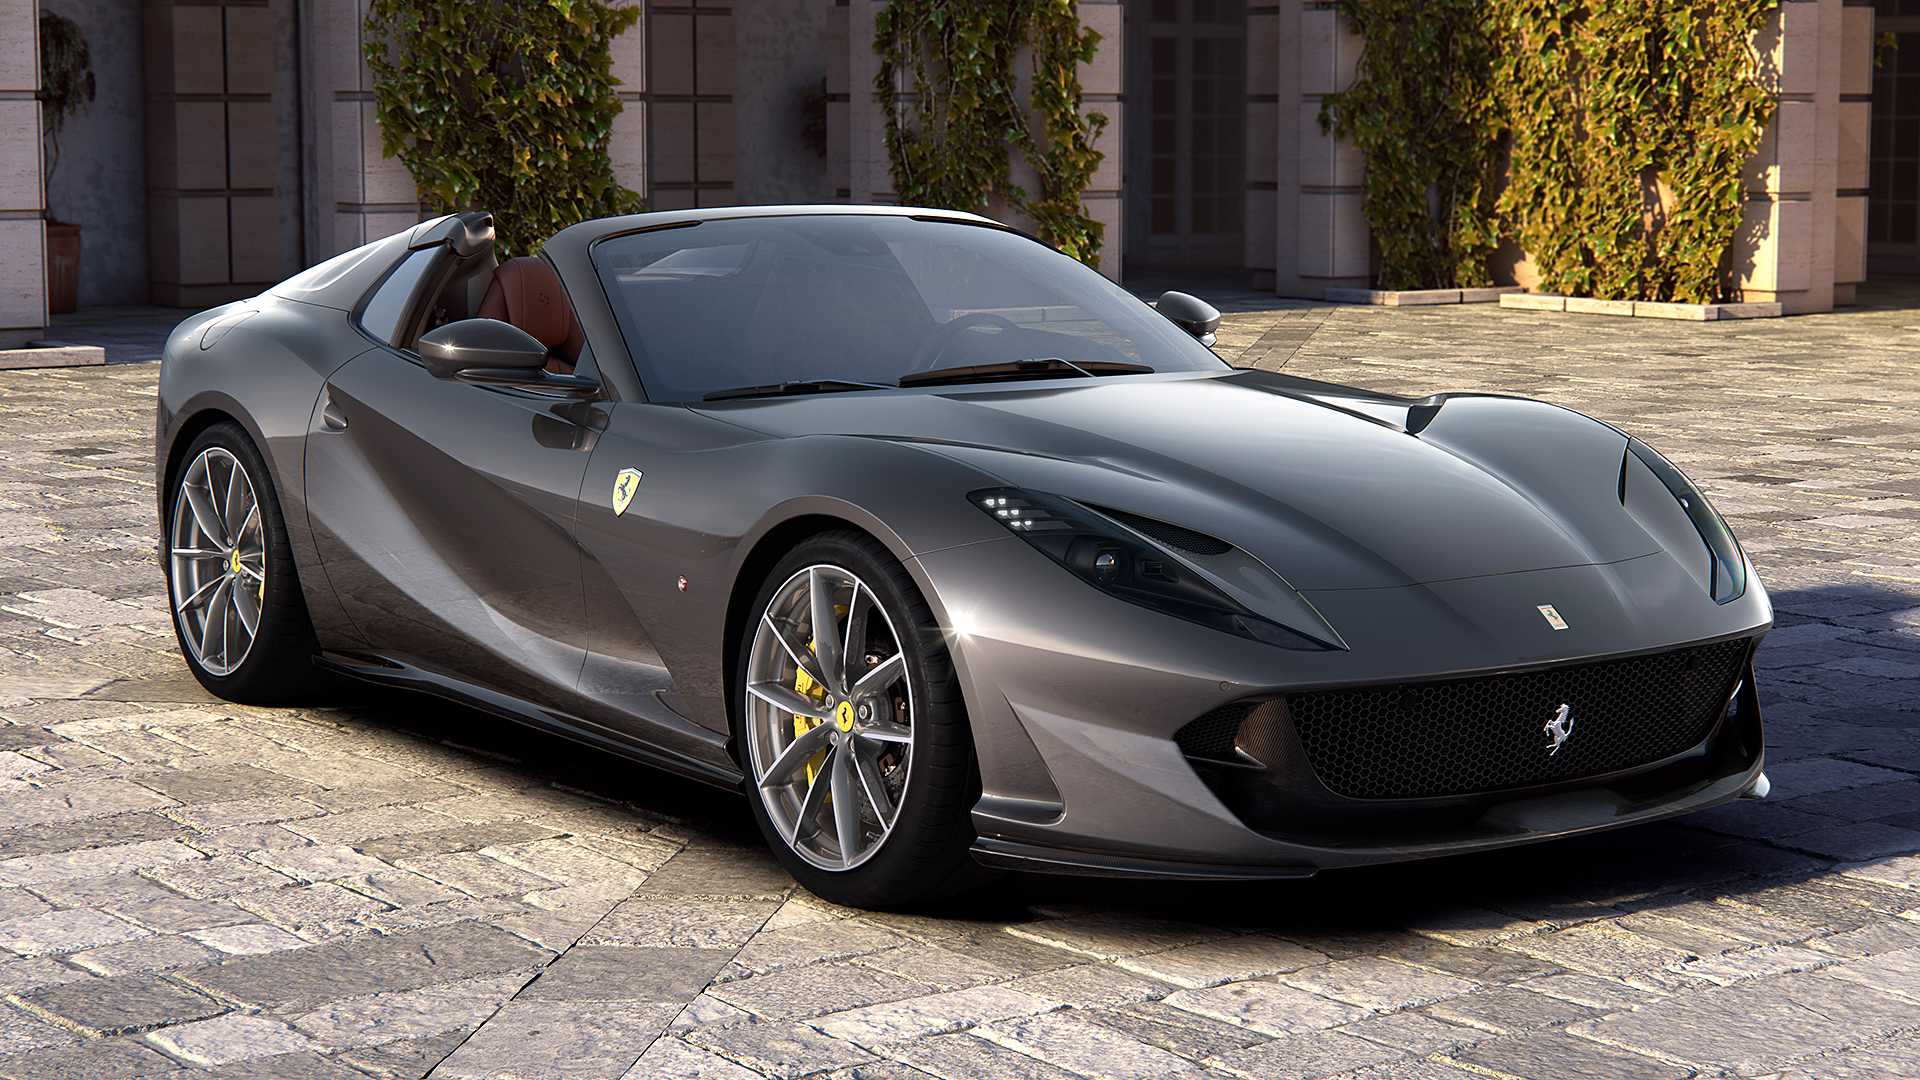 Ferrari non produrrà mai auto a guida autonoma